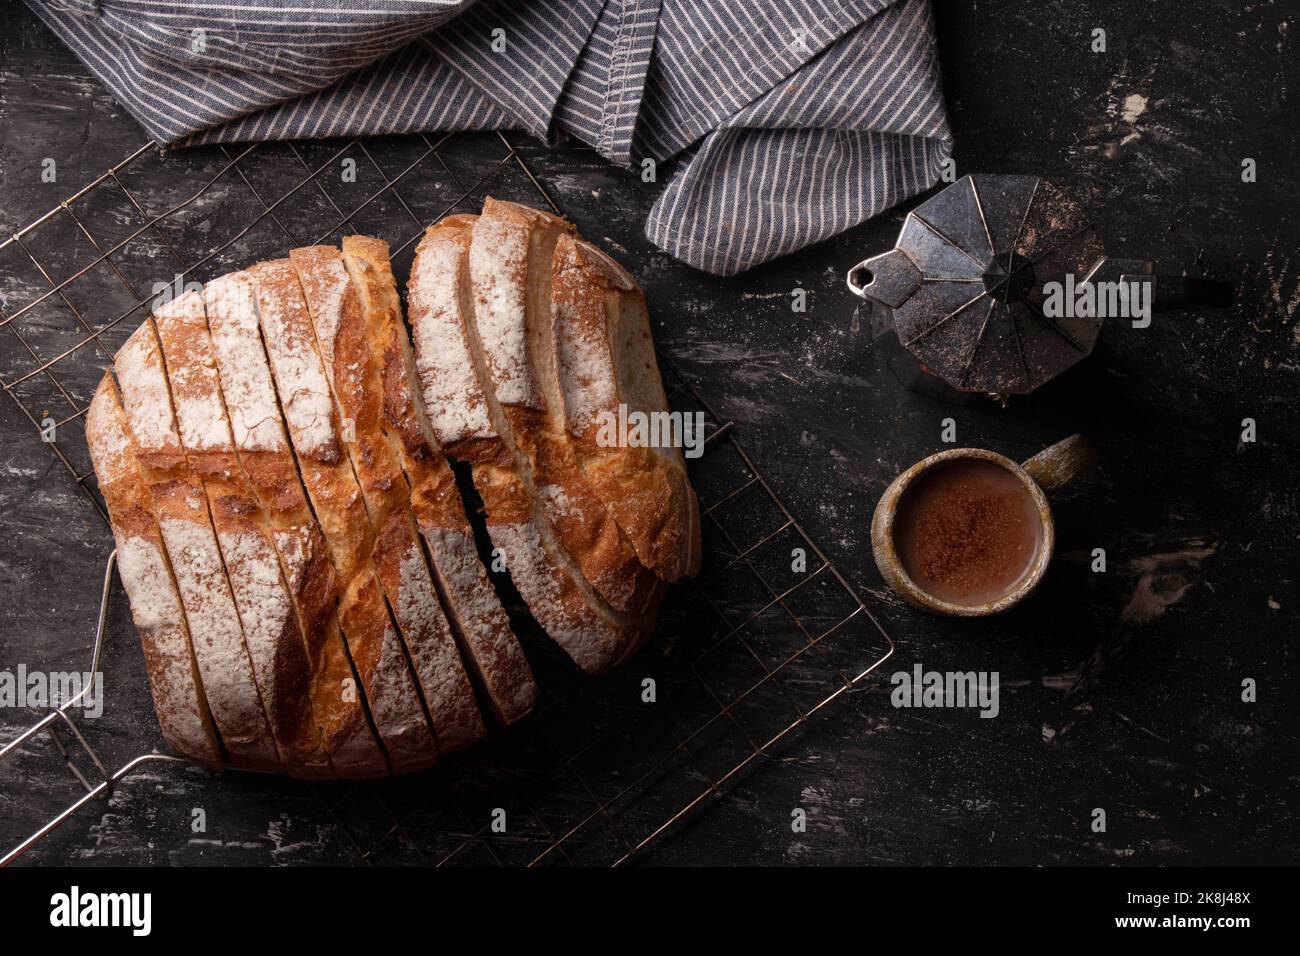 Pan redondo de masa madre recién horneada con una cafetera y una taza de café y una servilleta sobre un fondo oscuro. Foto de stock